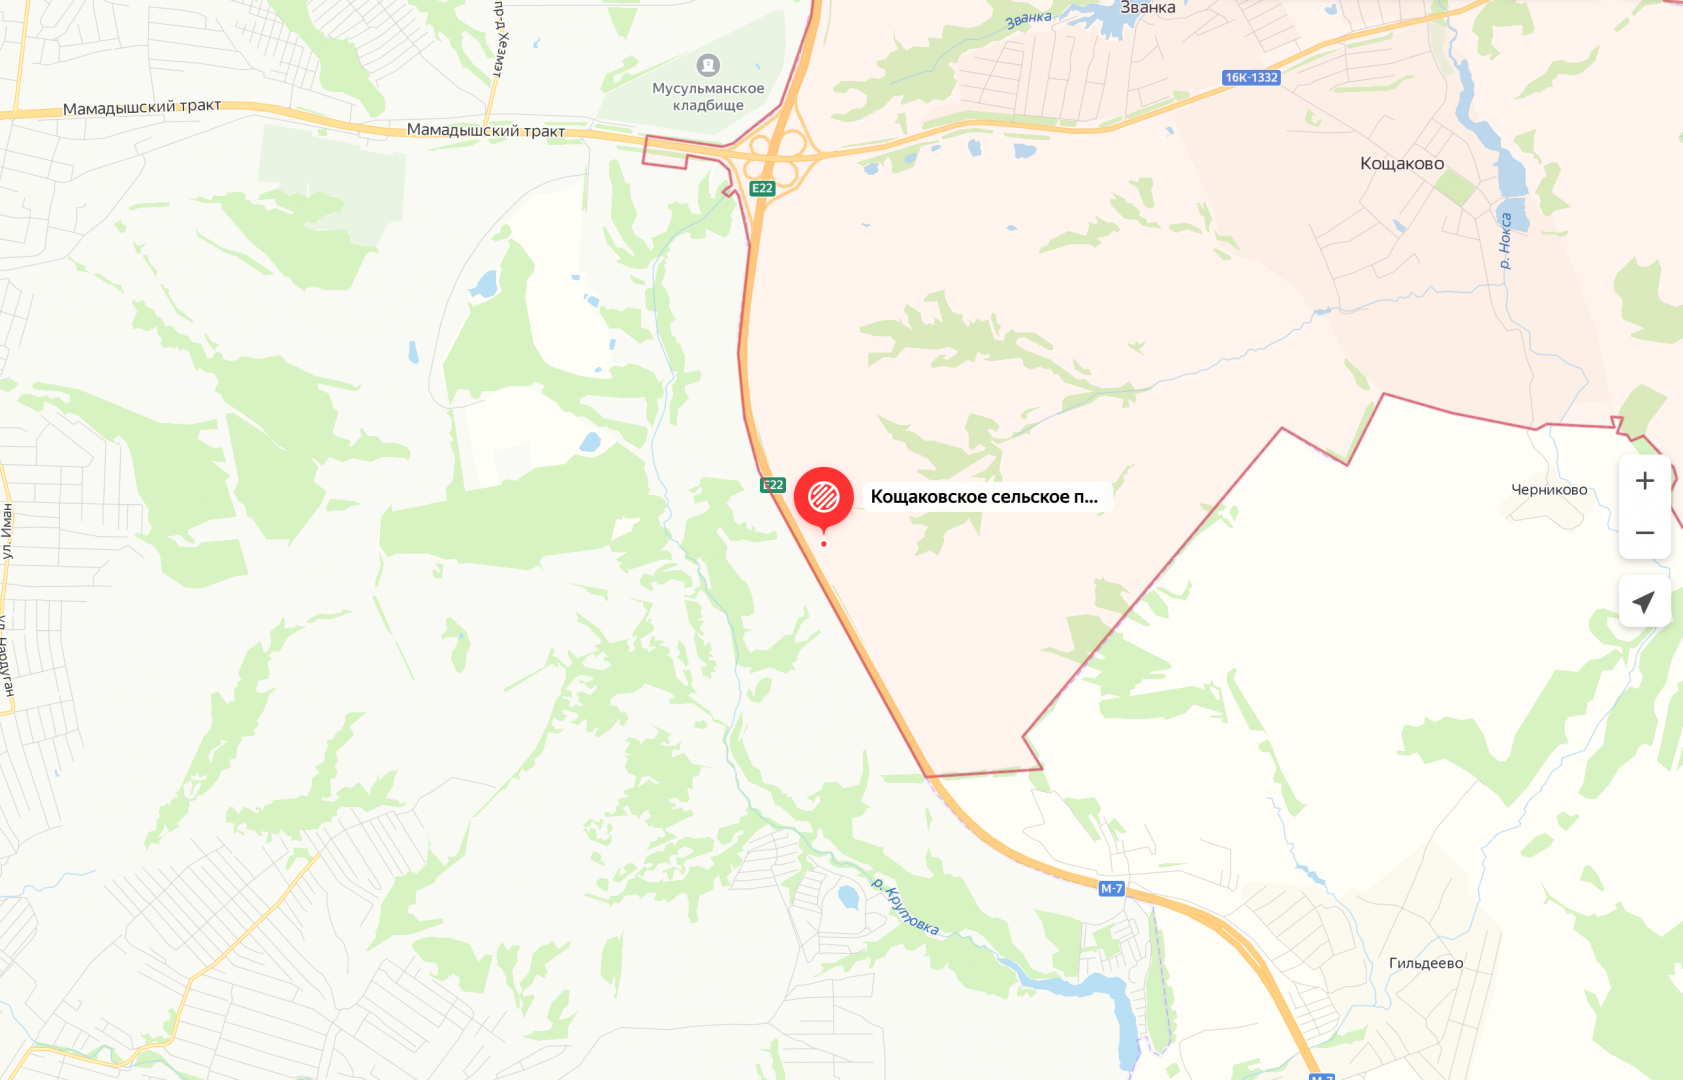 Продается земельный участок 100 соток промышленного назначения в Пестречинском районе, Кощаковское сельское... - 2